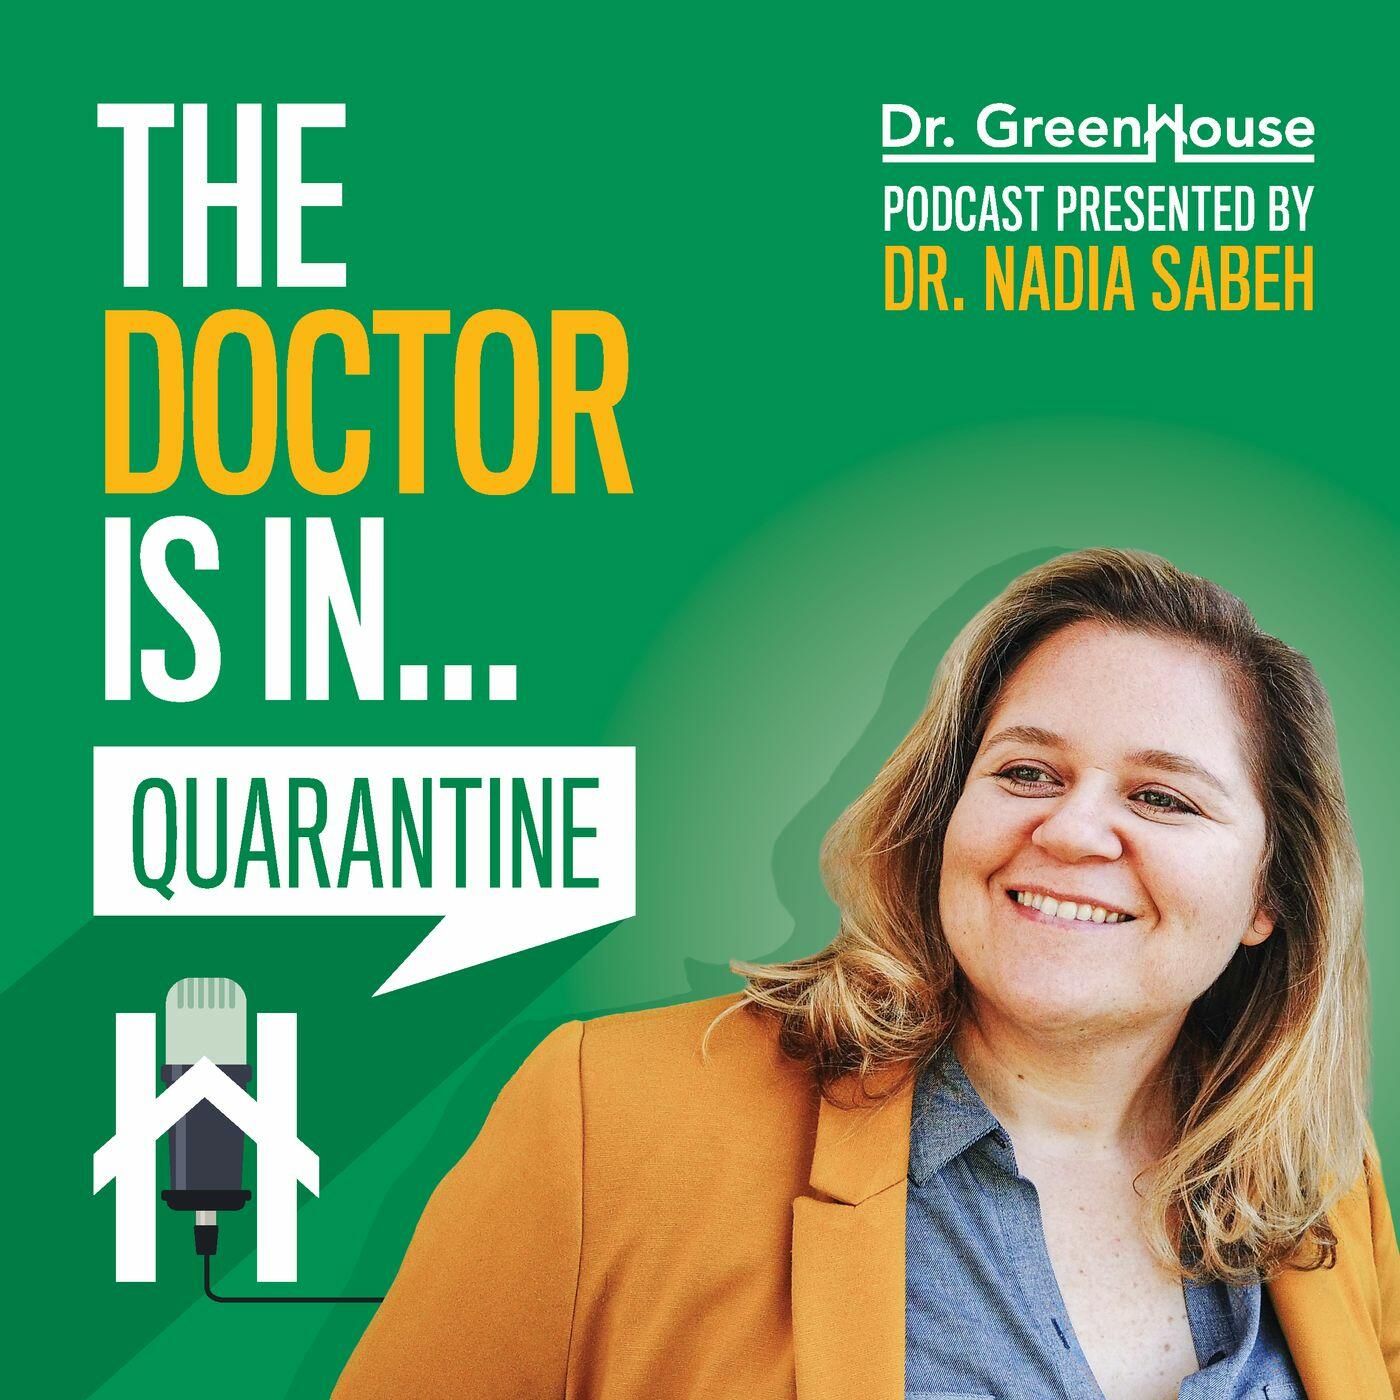 Dr. Nadia Sabeh Podcast